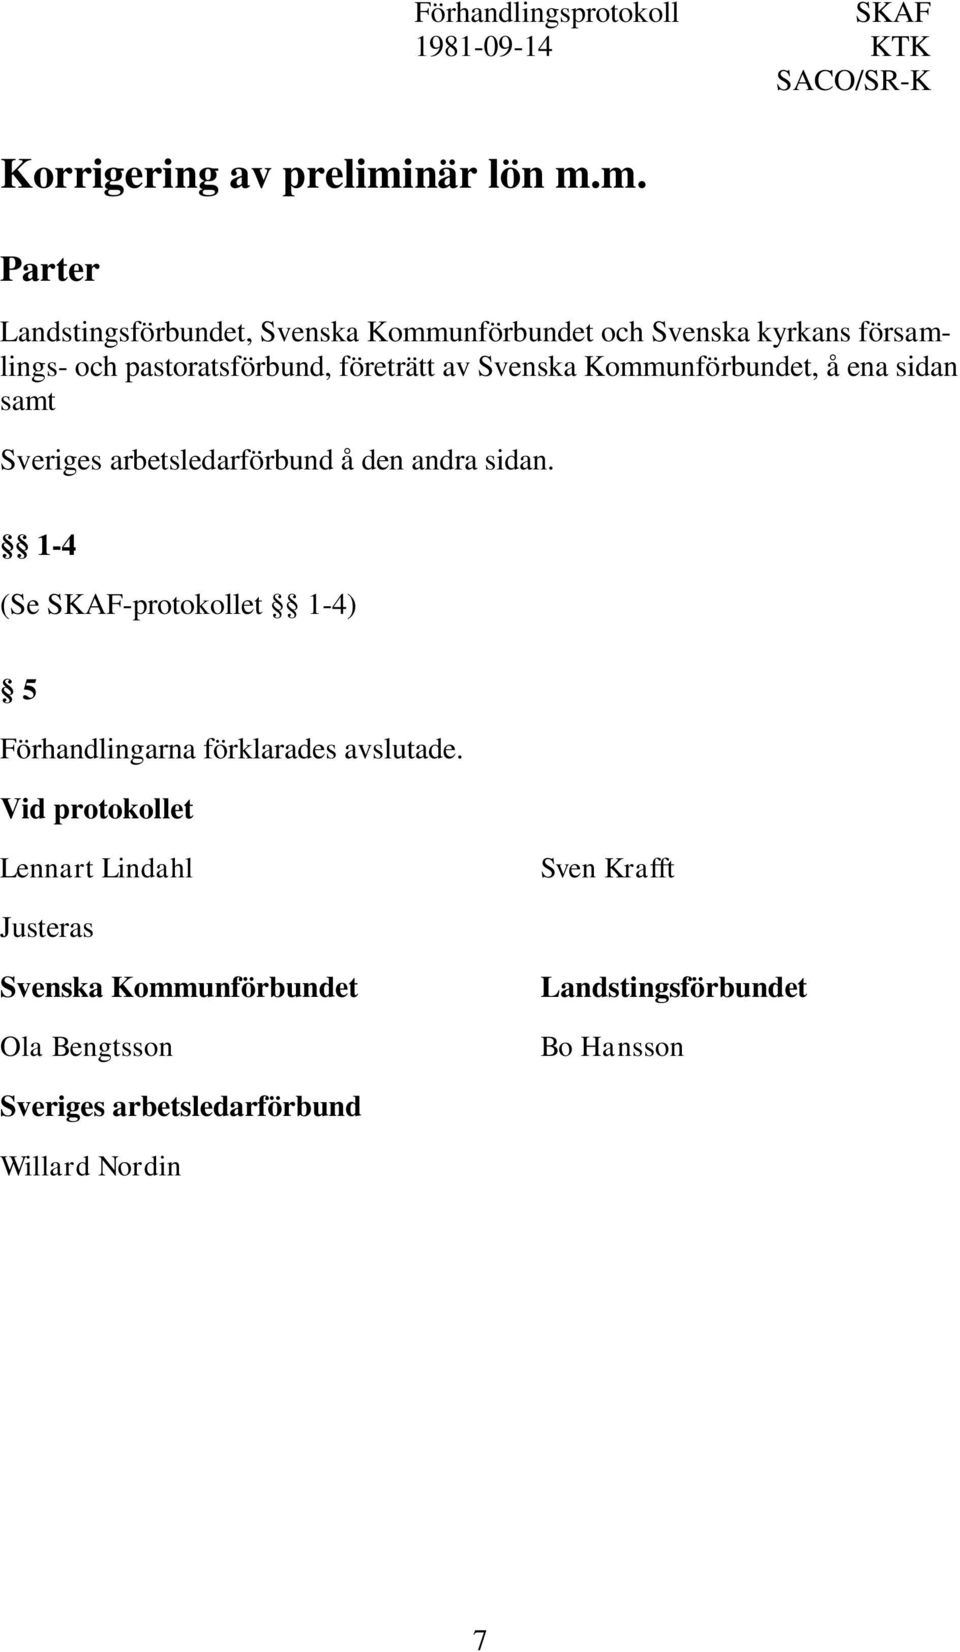 m. Parter Förhandlingsprotokoll SKAF 1981-09-14 KTK SACO/SR-K Landstingsförbundet, Svenska Kommunförbundet och Svenska kyrkans